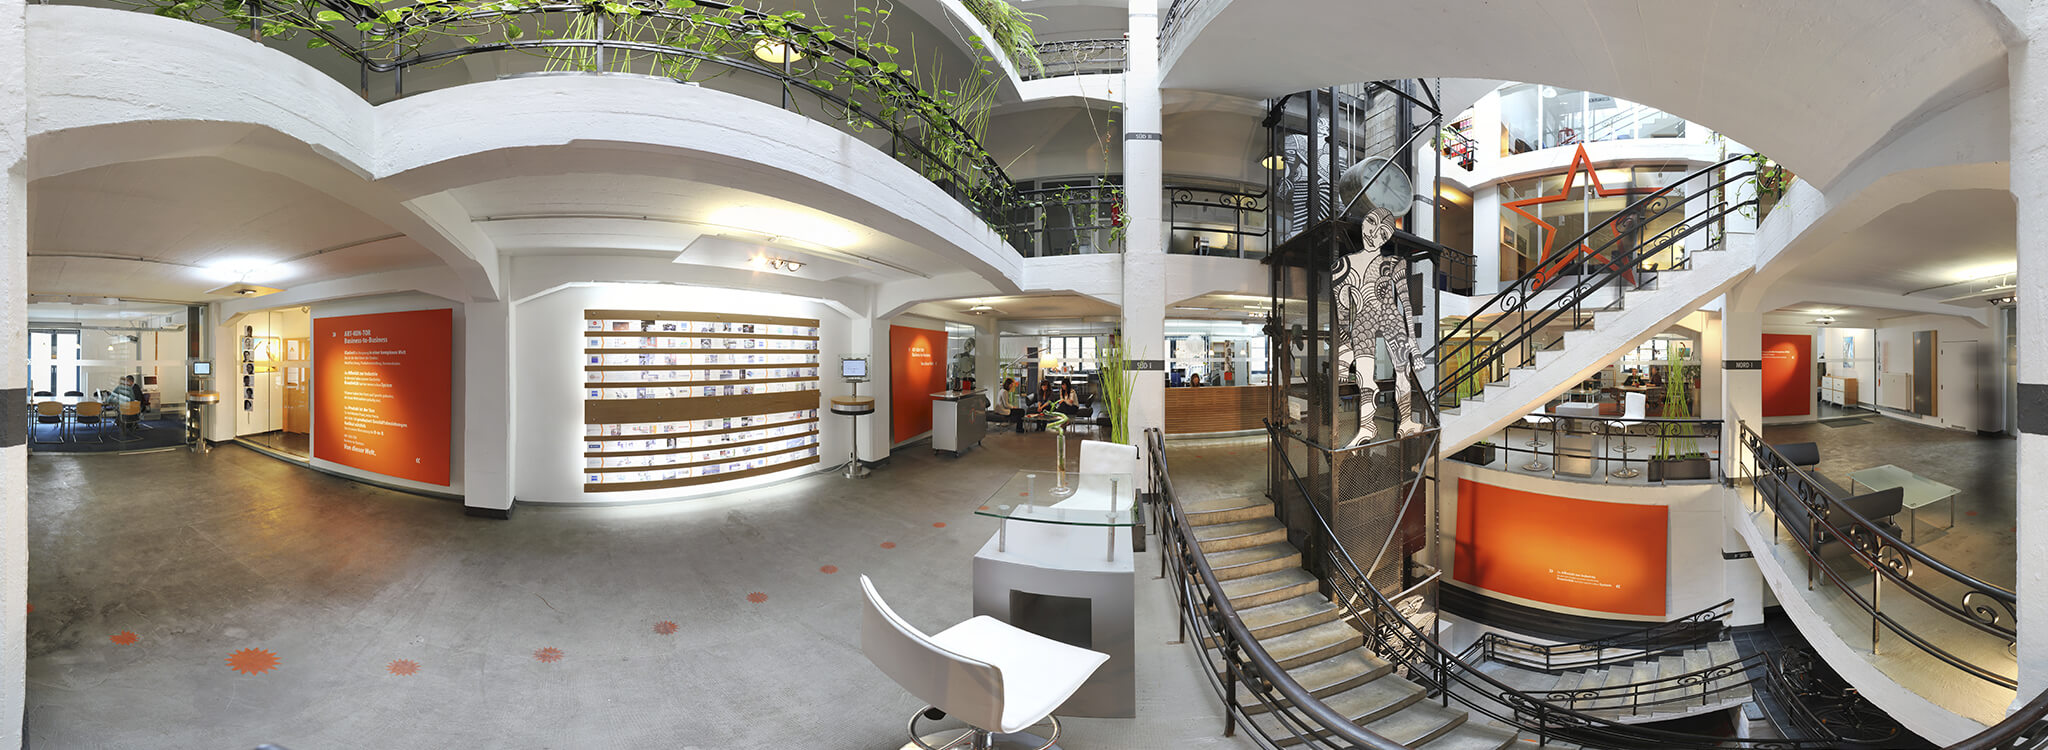 Panoramablick in das Erdgeschoss des ART-KON-TOR Firmensitzes